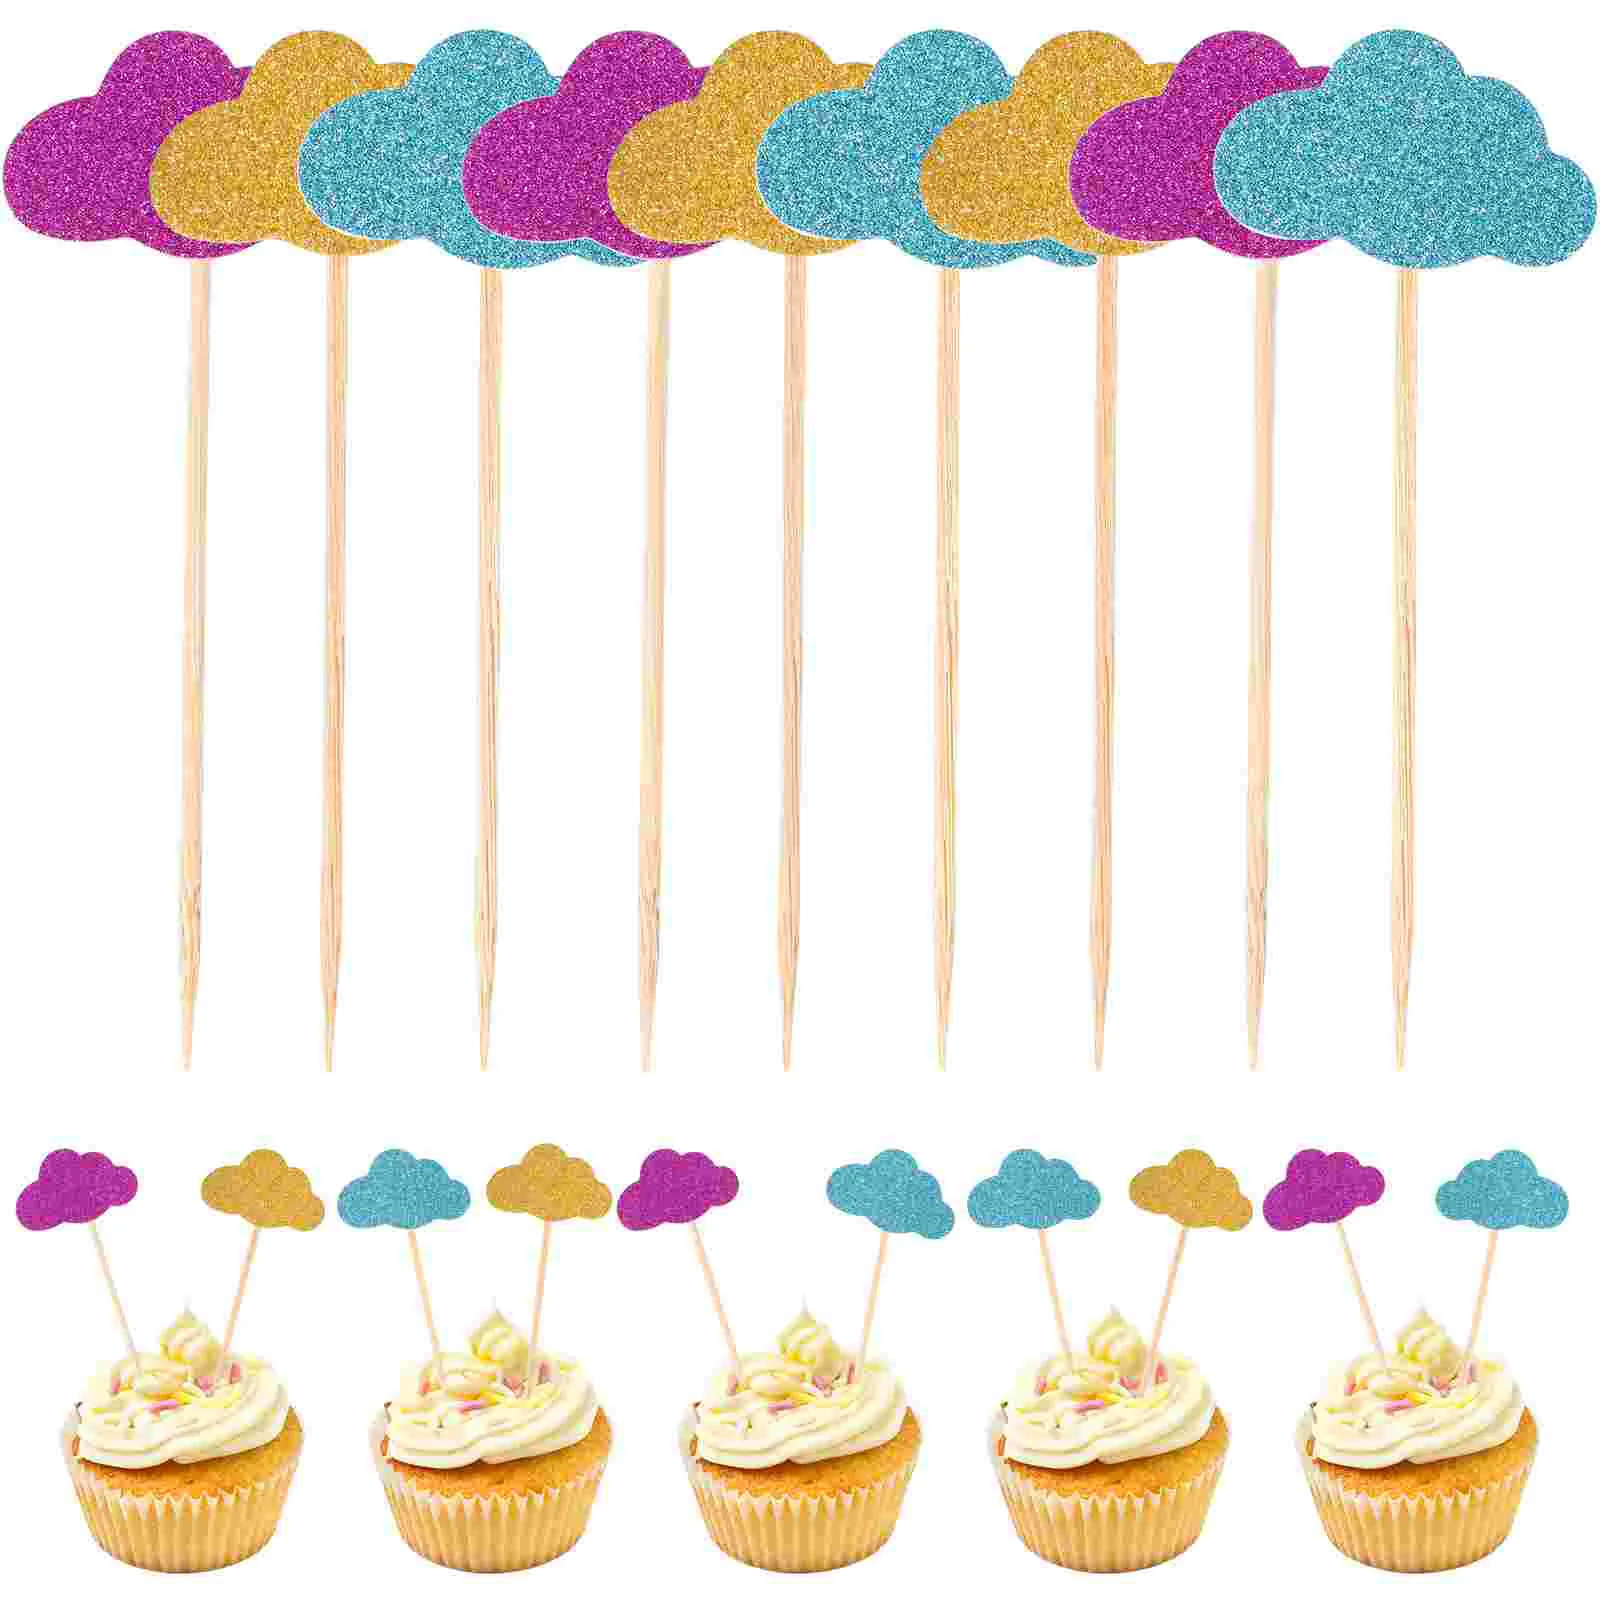 

20 шт. бумажные топперы для кексов с облаками, блестящие декоративные топперы для кексов, хлеба, маффинов, фруктов, Детские топперы для тортов на день рождения